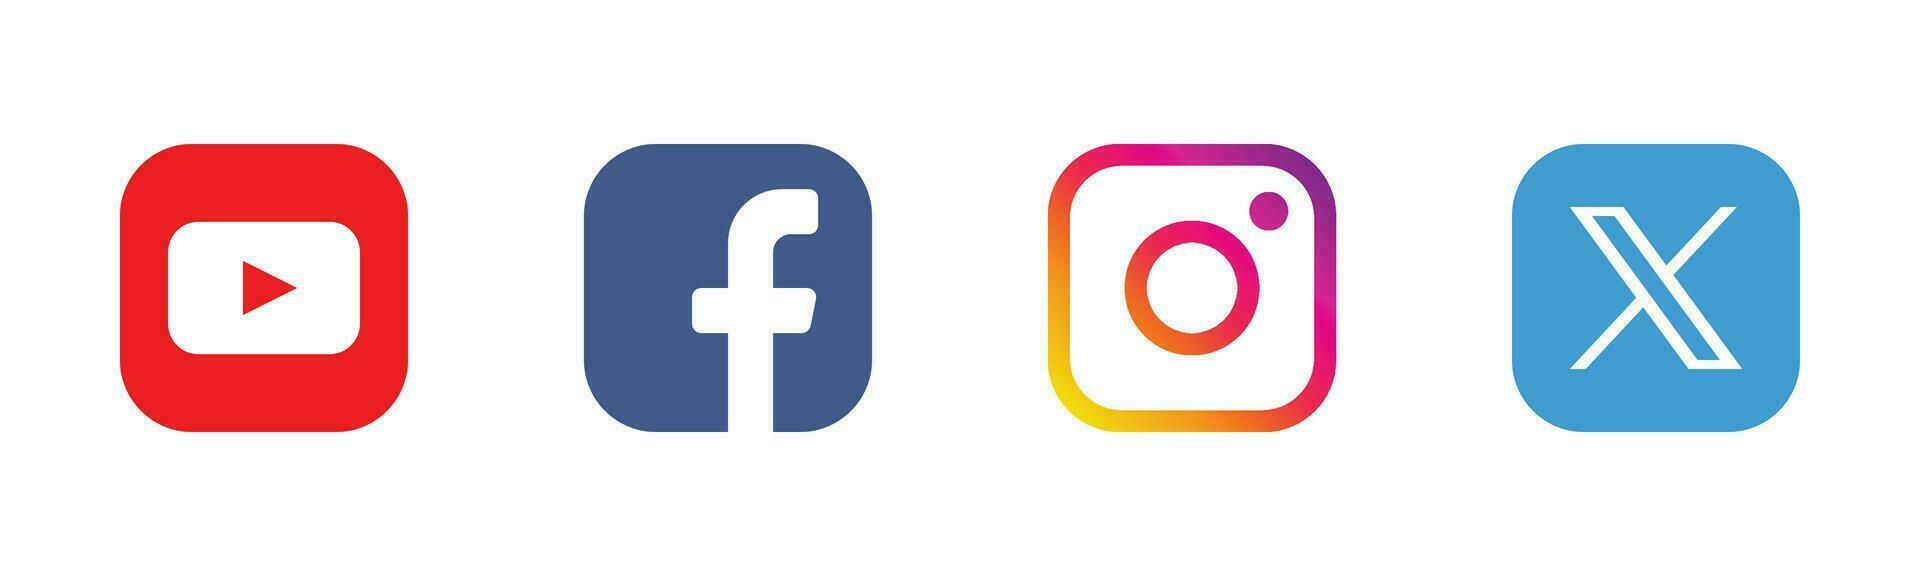 sociaal media logo pictogrammen reeks - facebook, instagram, twitteren, youtube symbolen vector